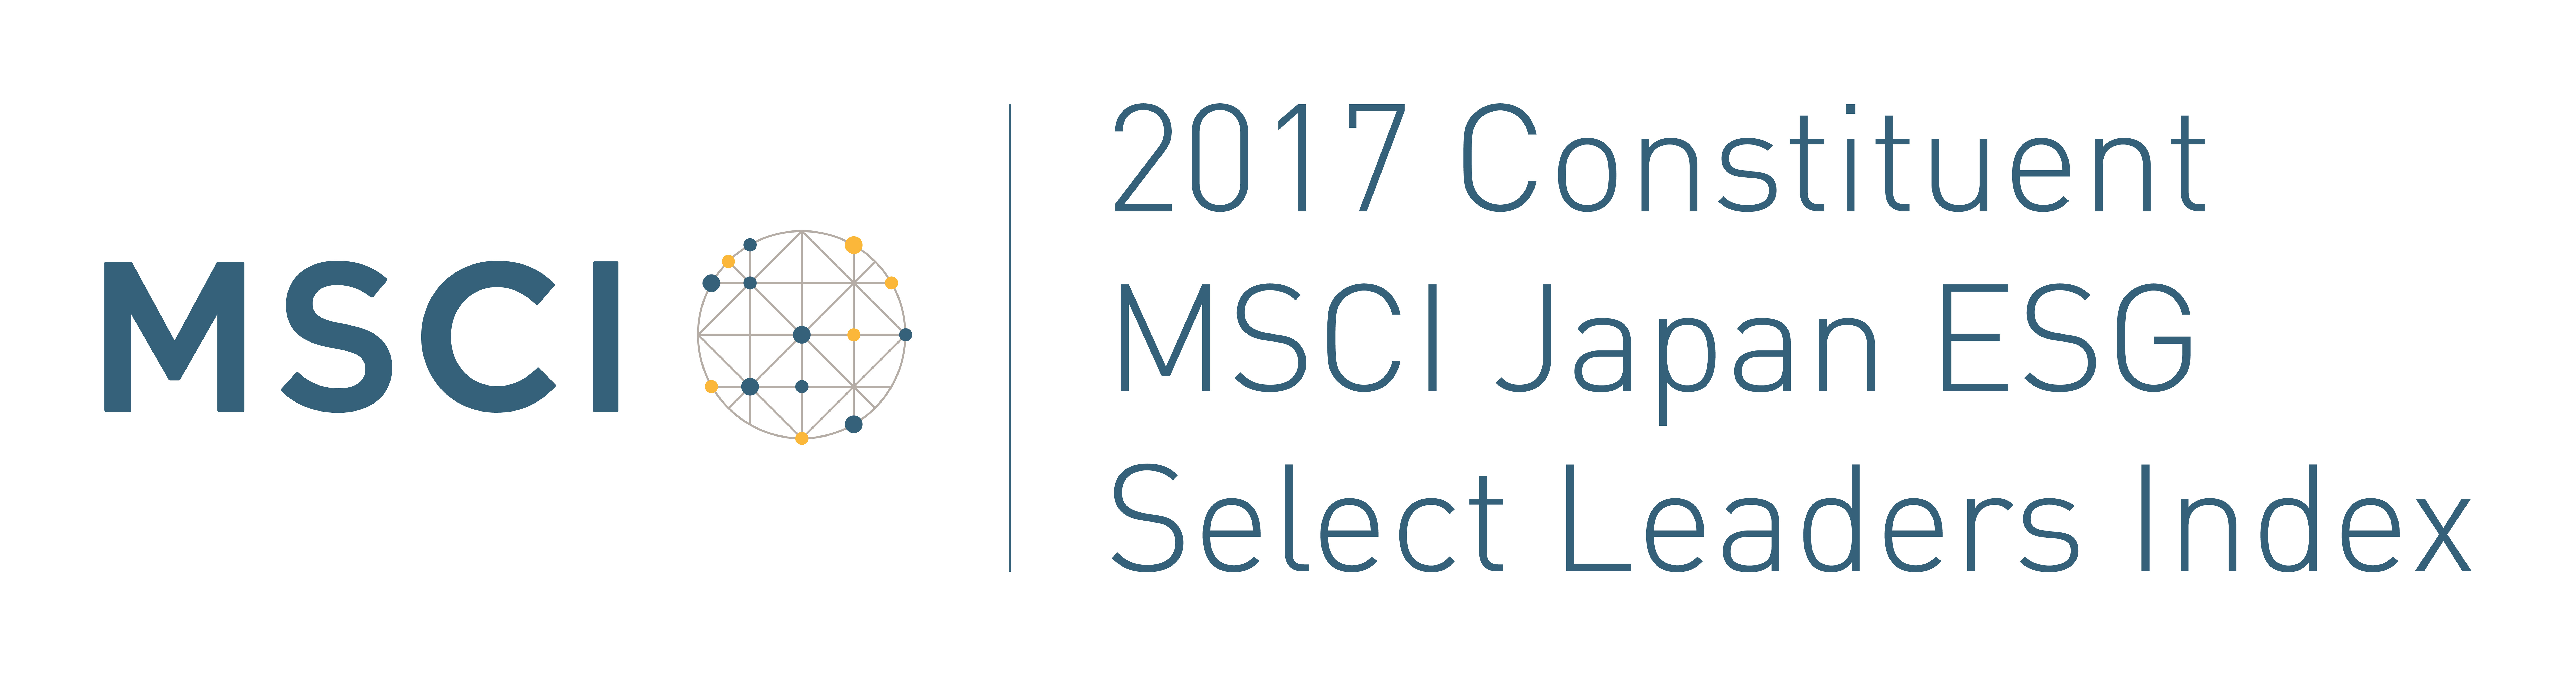 MSCI Japan ESG Select Leaders Index 